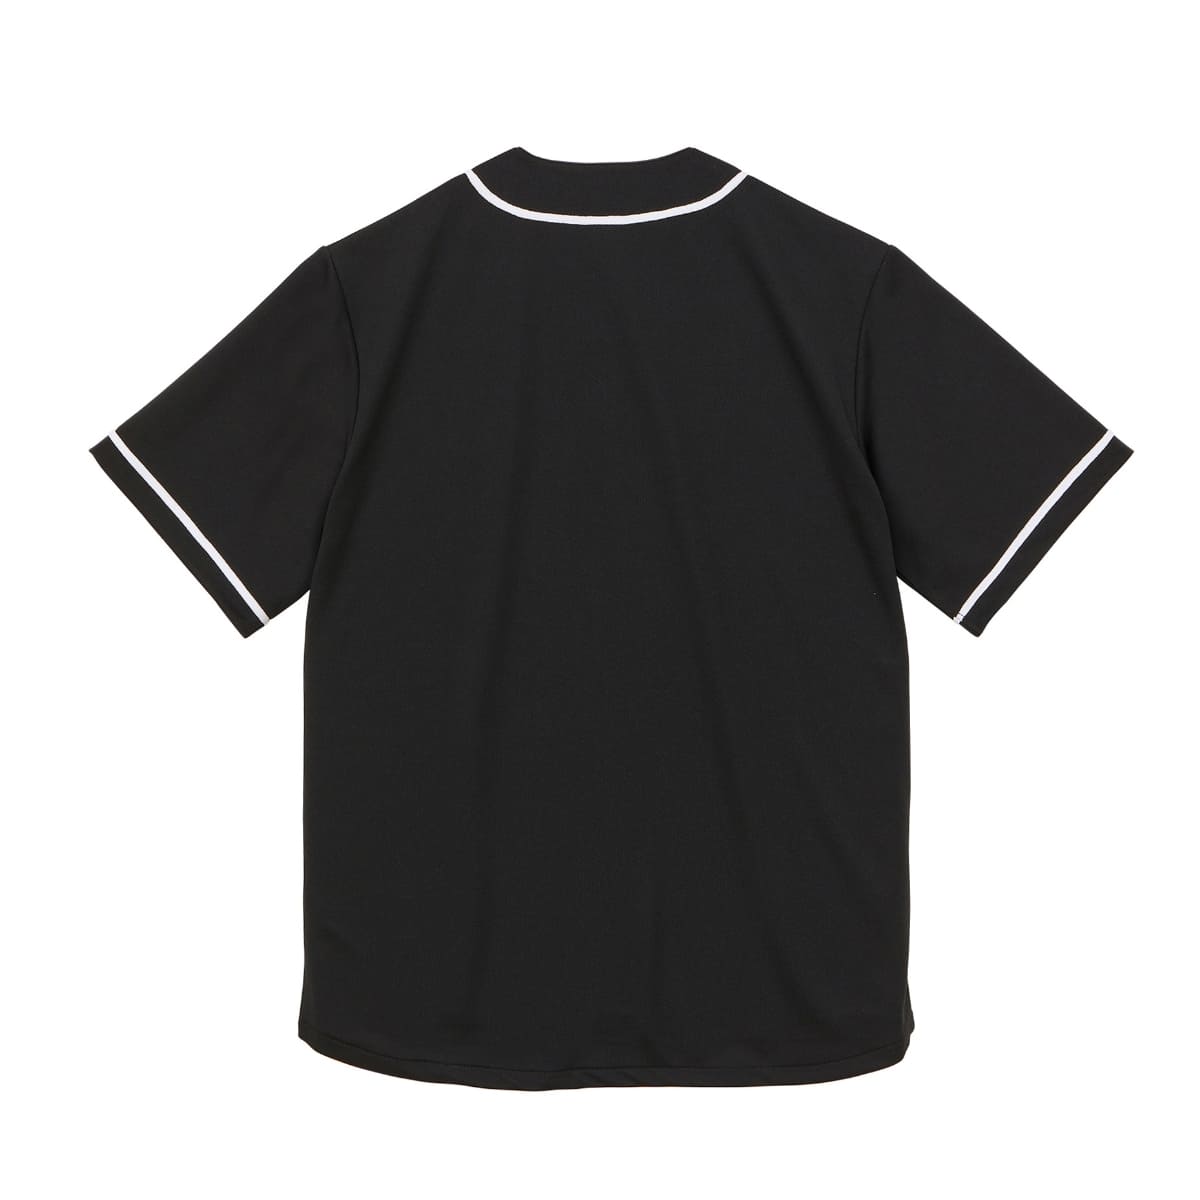 4.1オンス ドライアスレチック ベースボールシャツ | ビッグサイズ | 1枚 | 5982-01 | ターコイズブルー/ホワイト